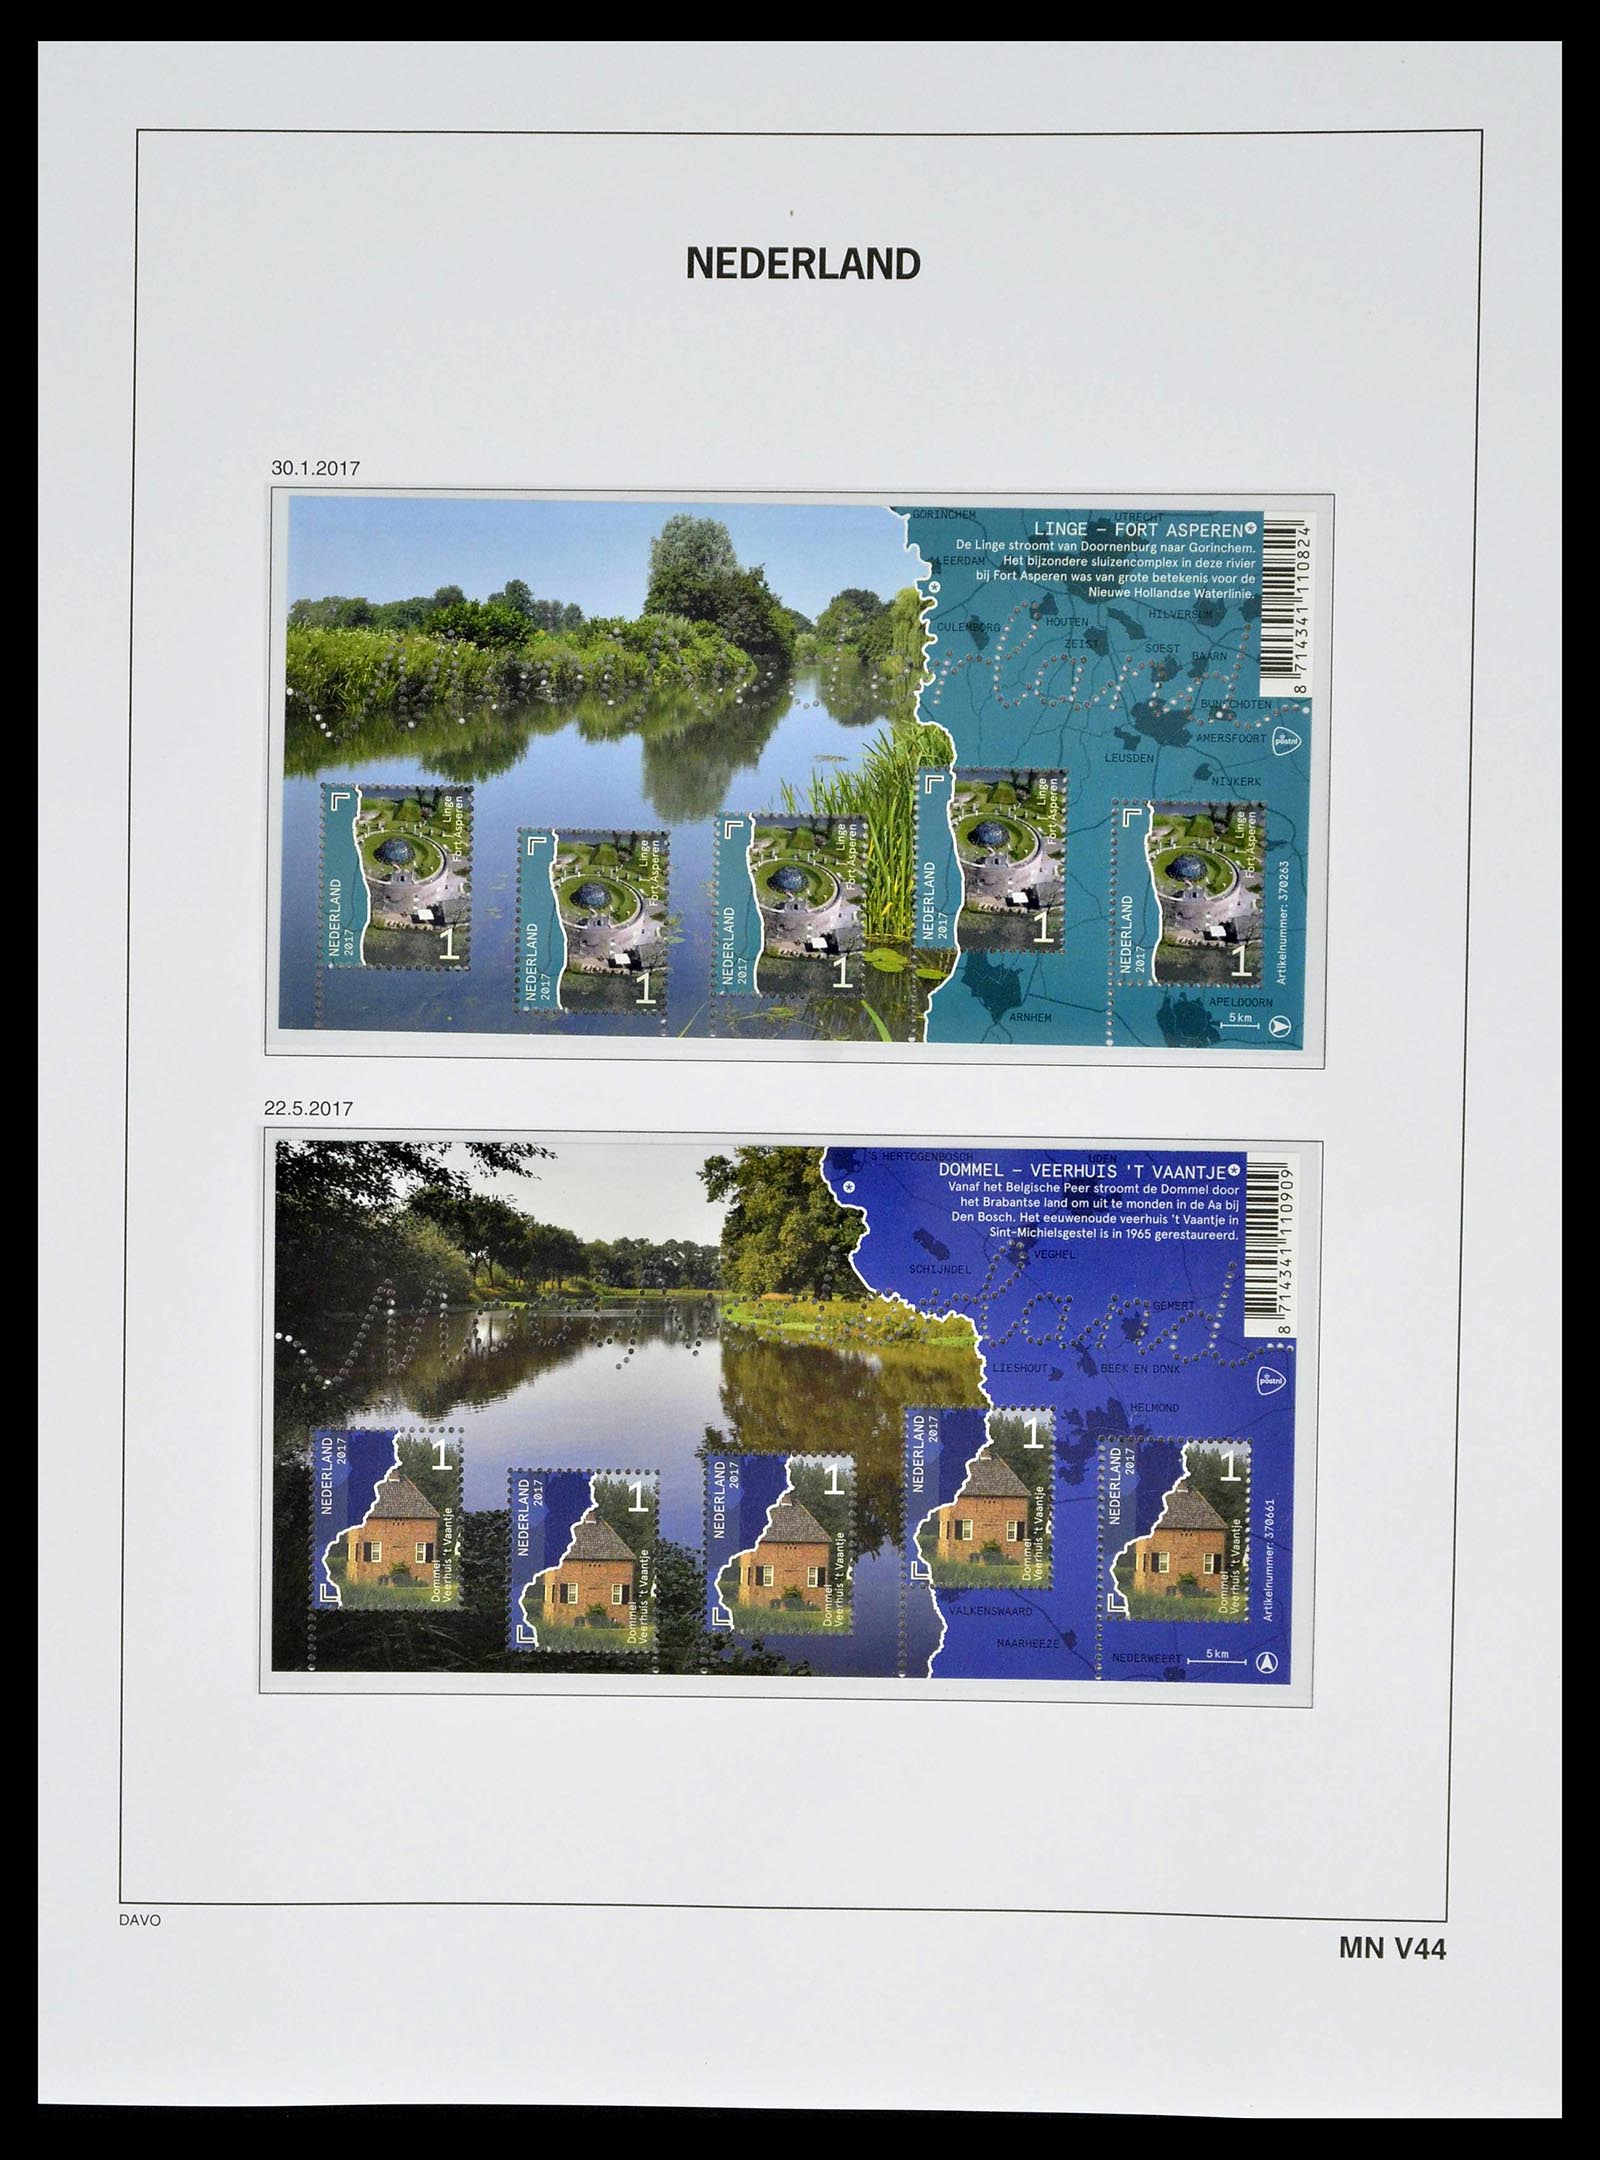 39134 0263 - Stamp collection 39134 Netherlands sheetlets 1992-2019!